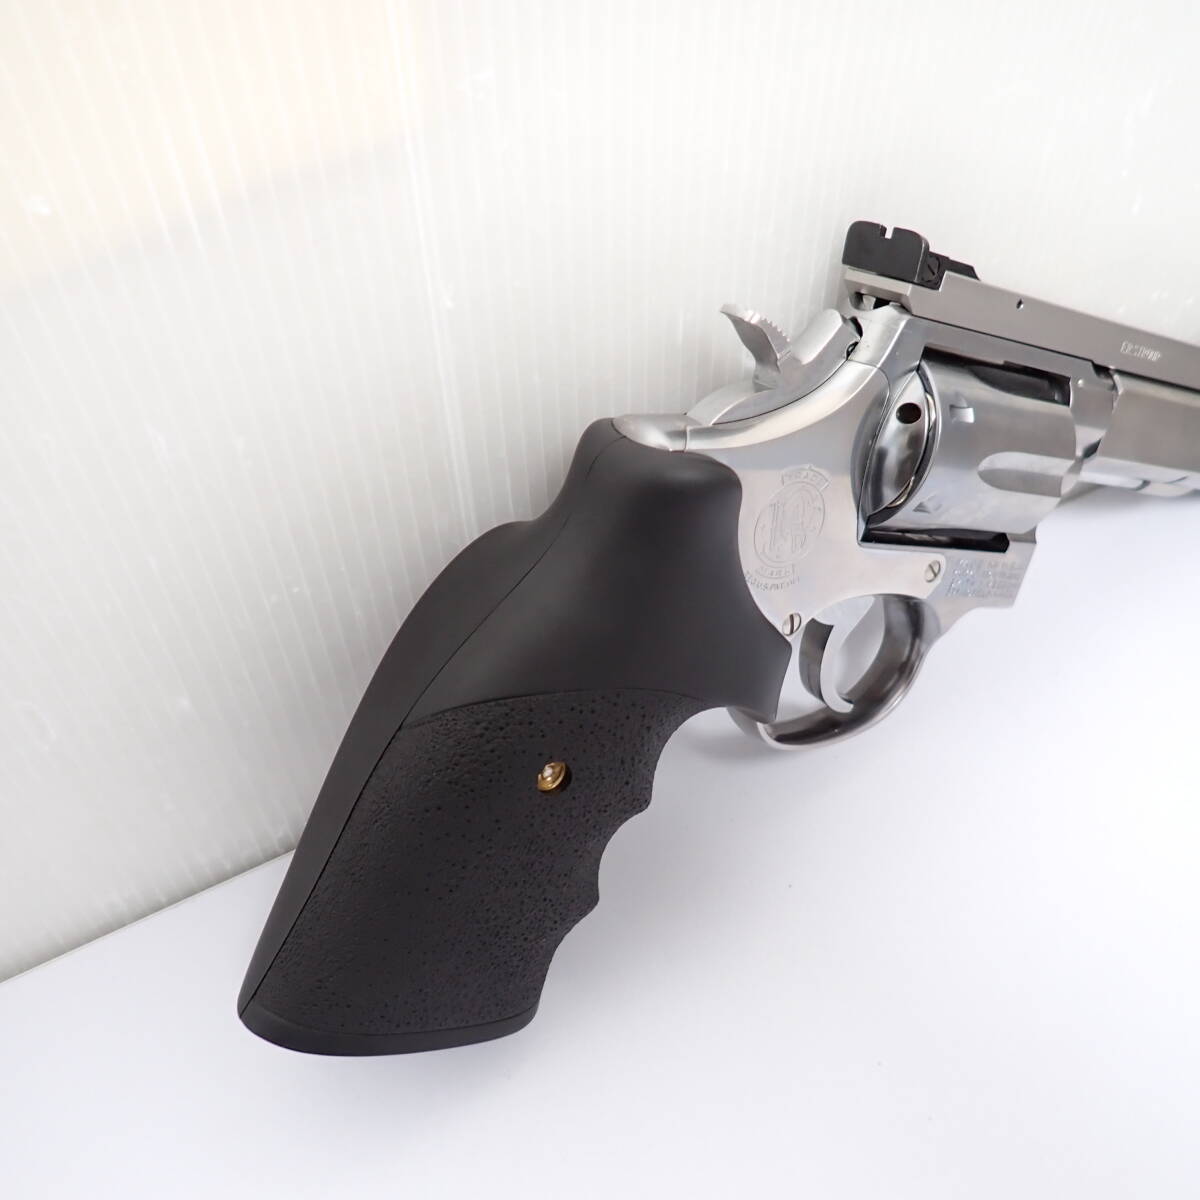 tanaka Works arm z magazine S&W model 65 -stroke laupPPC custom model gun 